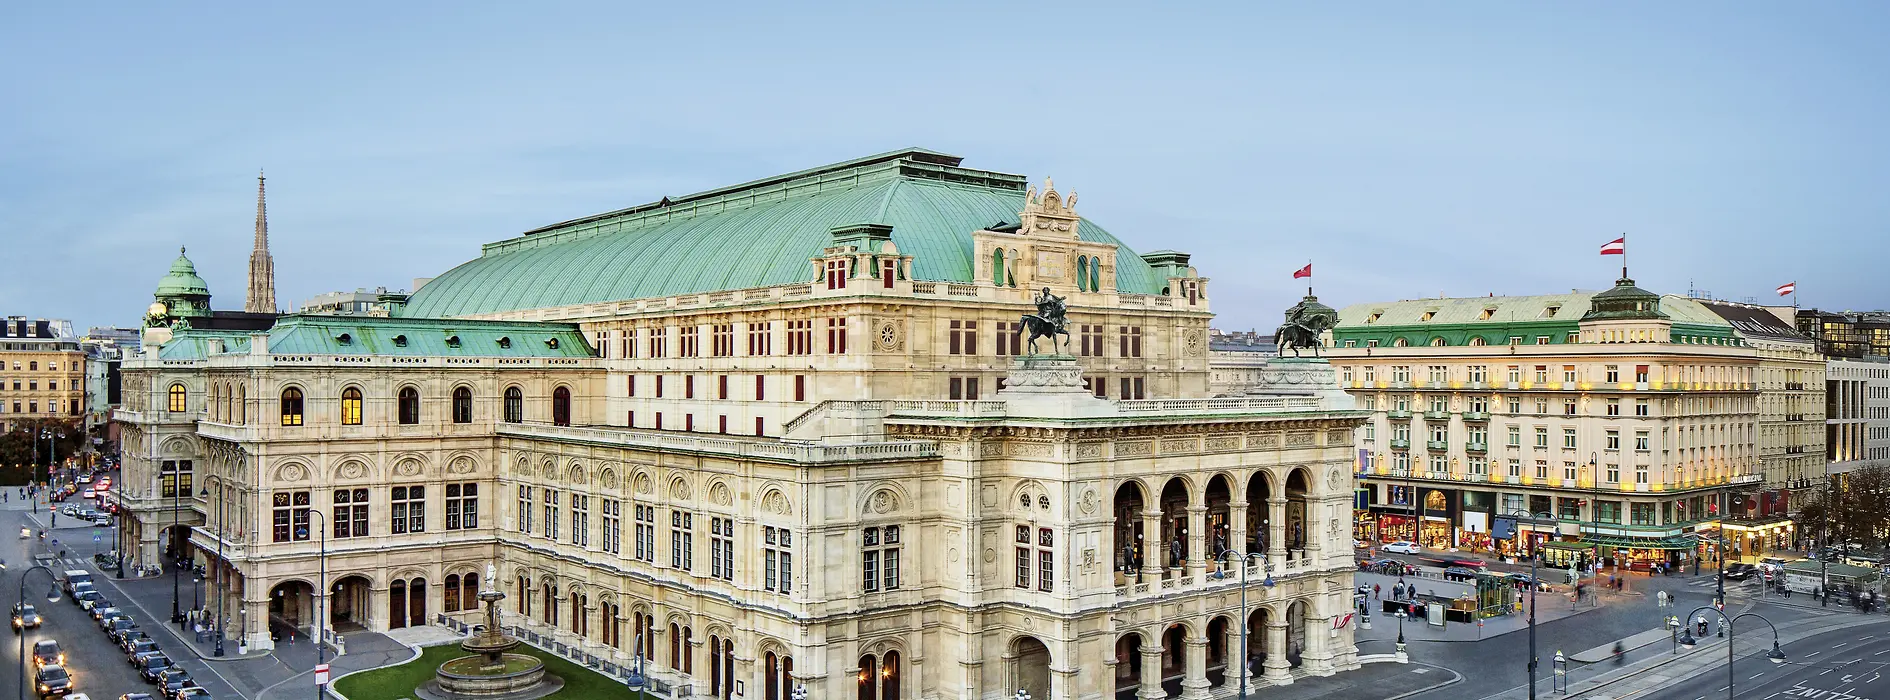 Opera di Stato di Vienna